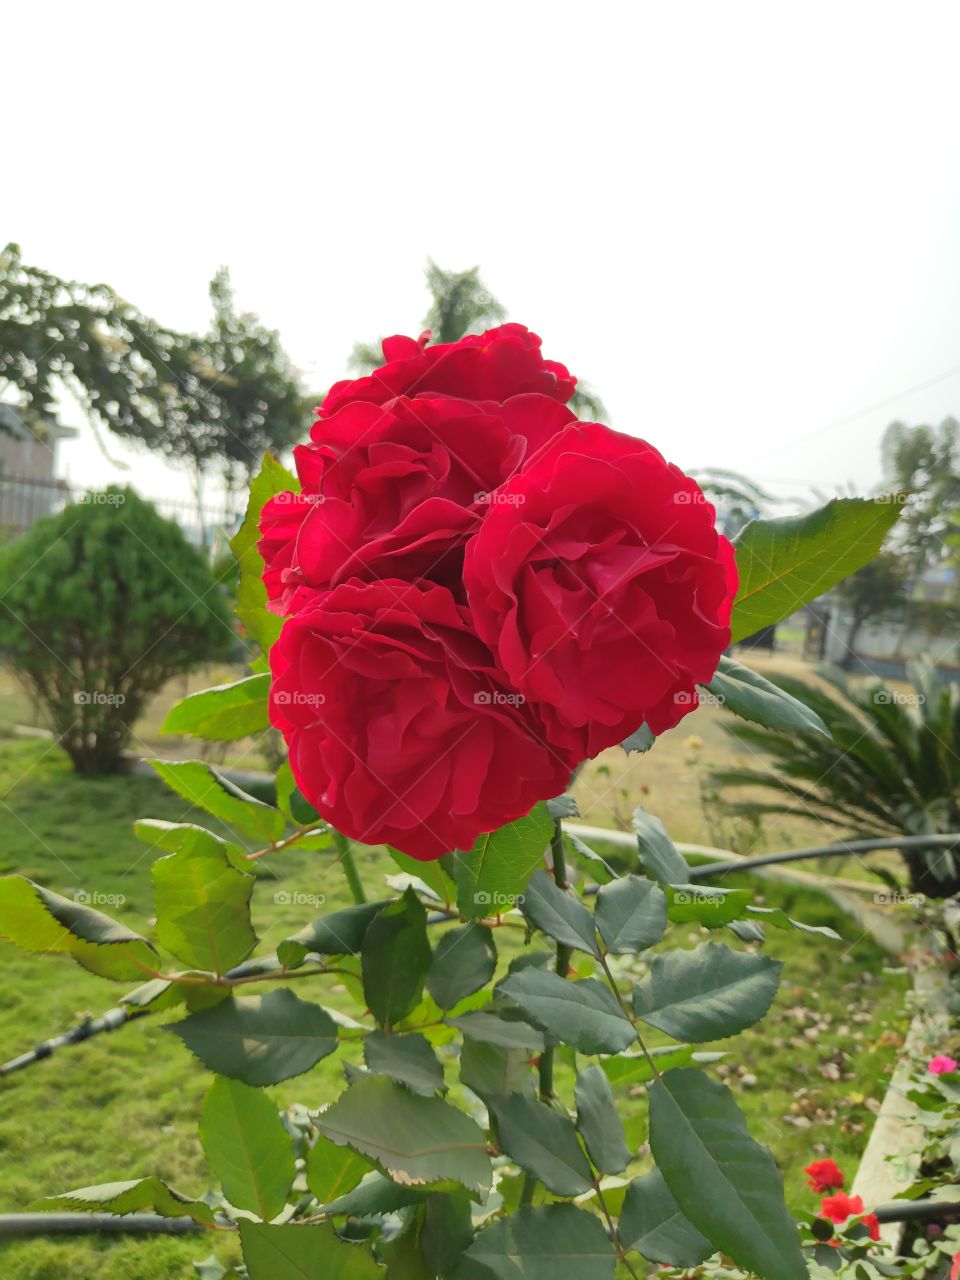 roses for Valentine